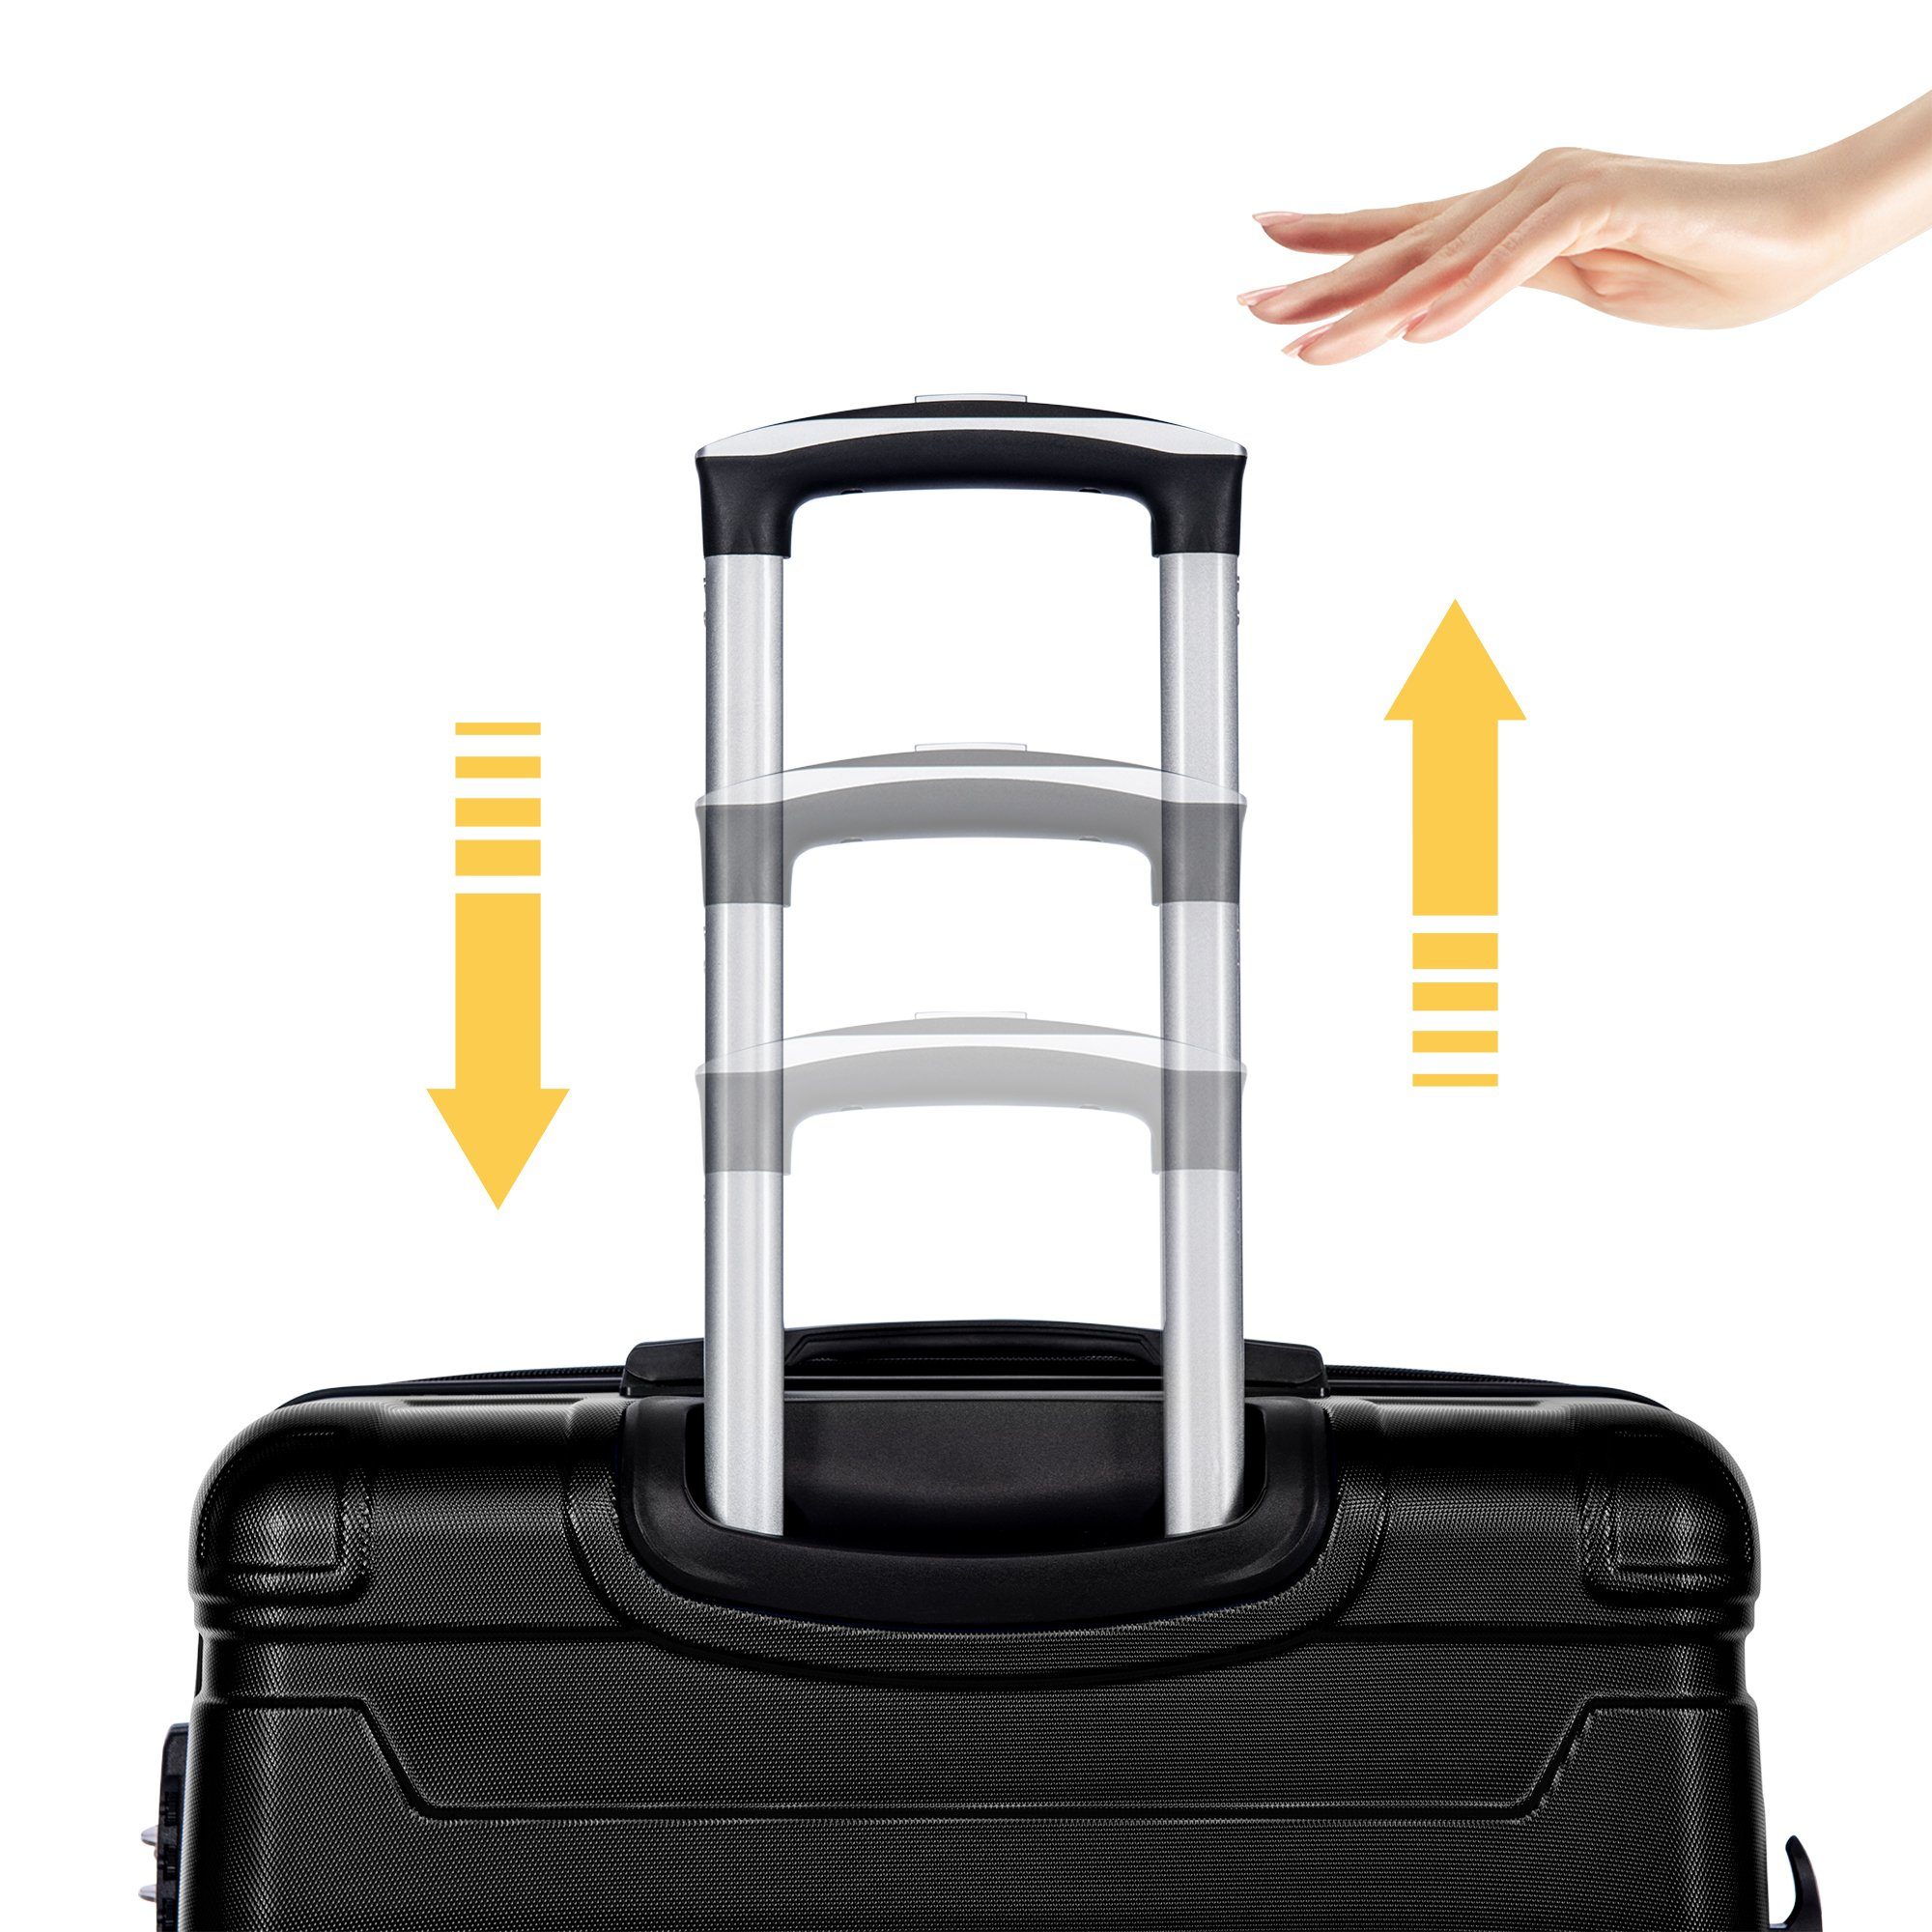 Celya 3-teiliges Schwarz Handgepäck Koffer Set Hartschalen-Trolley